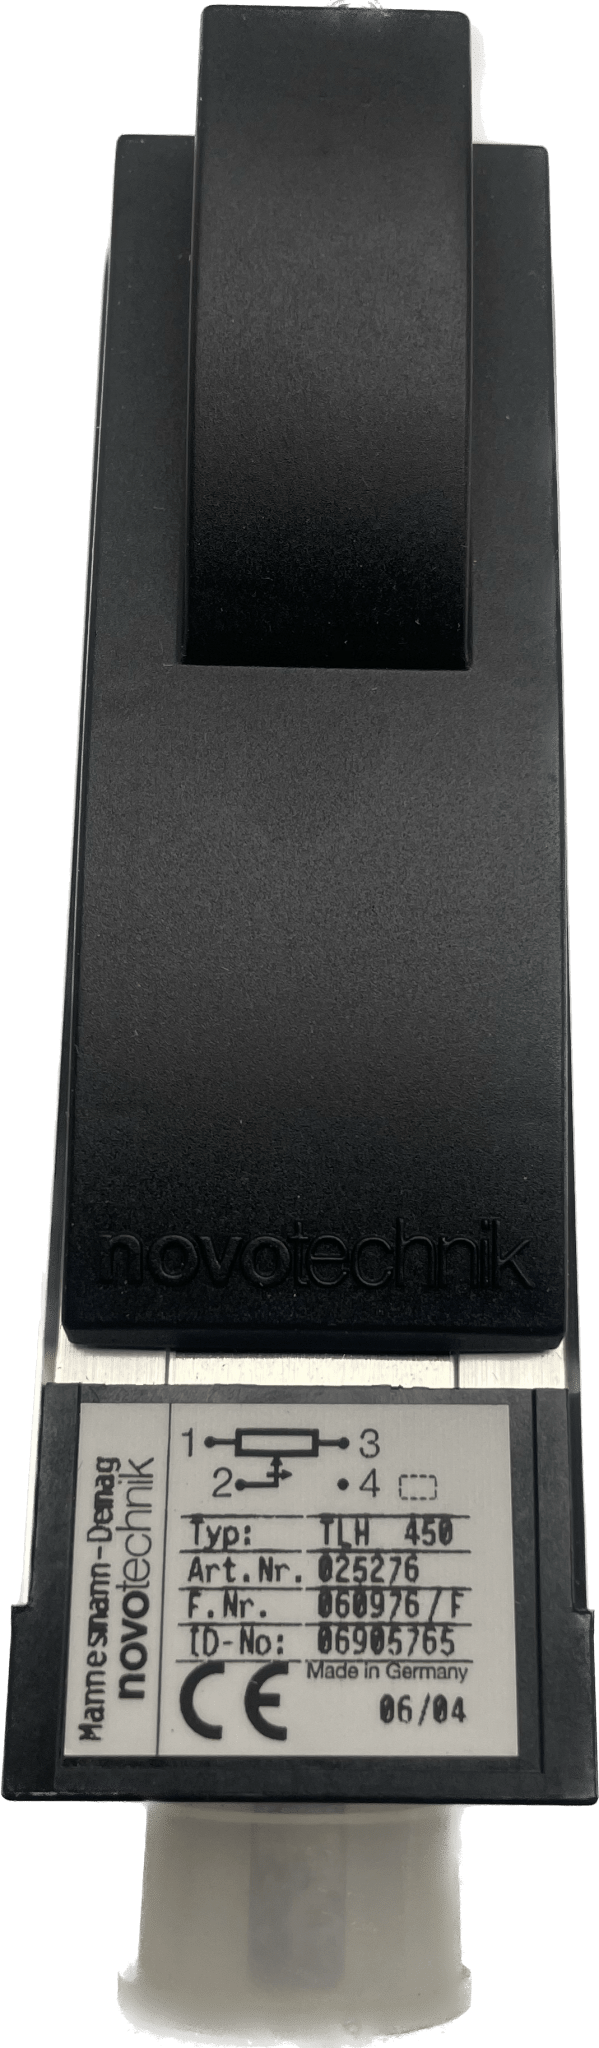 Novotechnik TLH 450 - #product_category# | Klenk Maschinenhandel